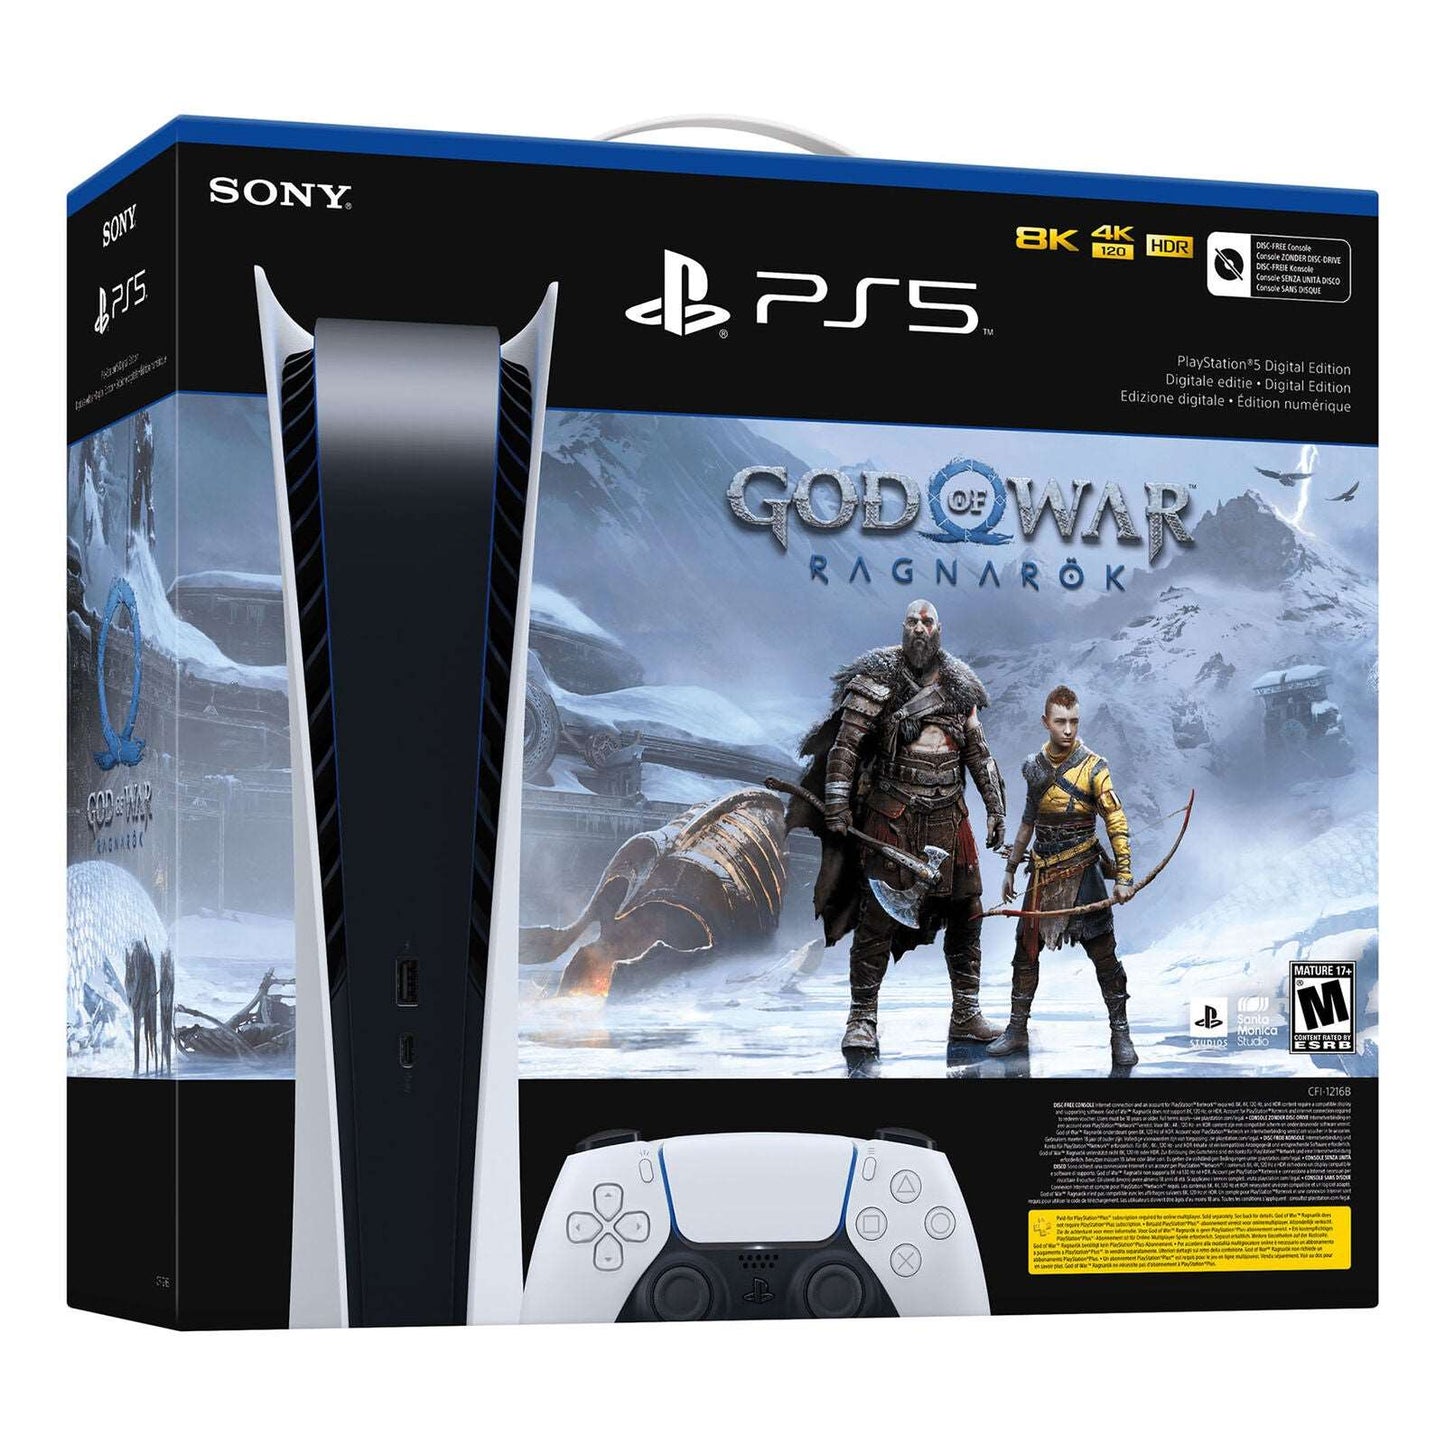 Sony PlayStation 5 Digital Edition PS5 – God of War Ragnarök Bundle